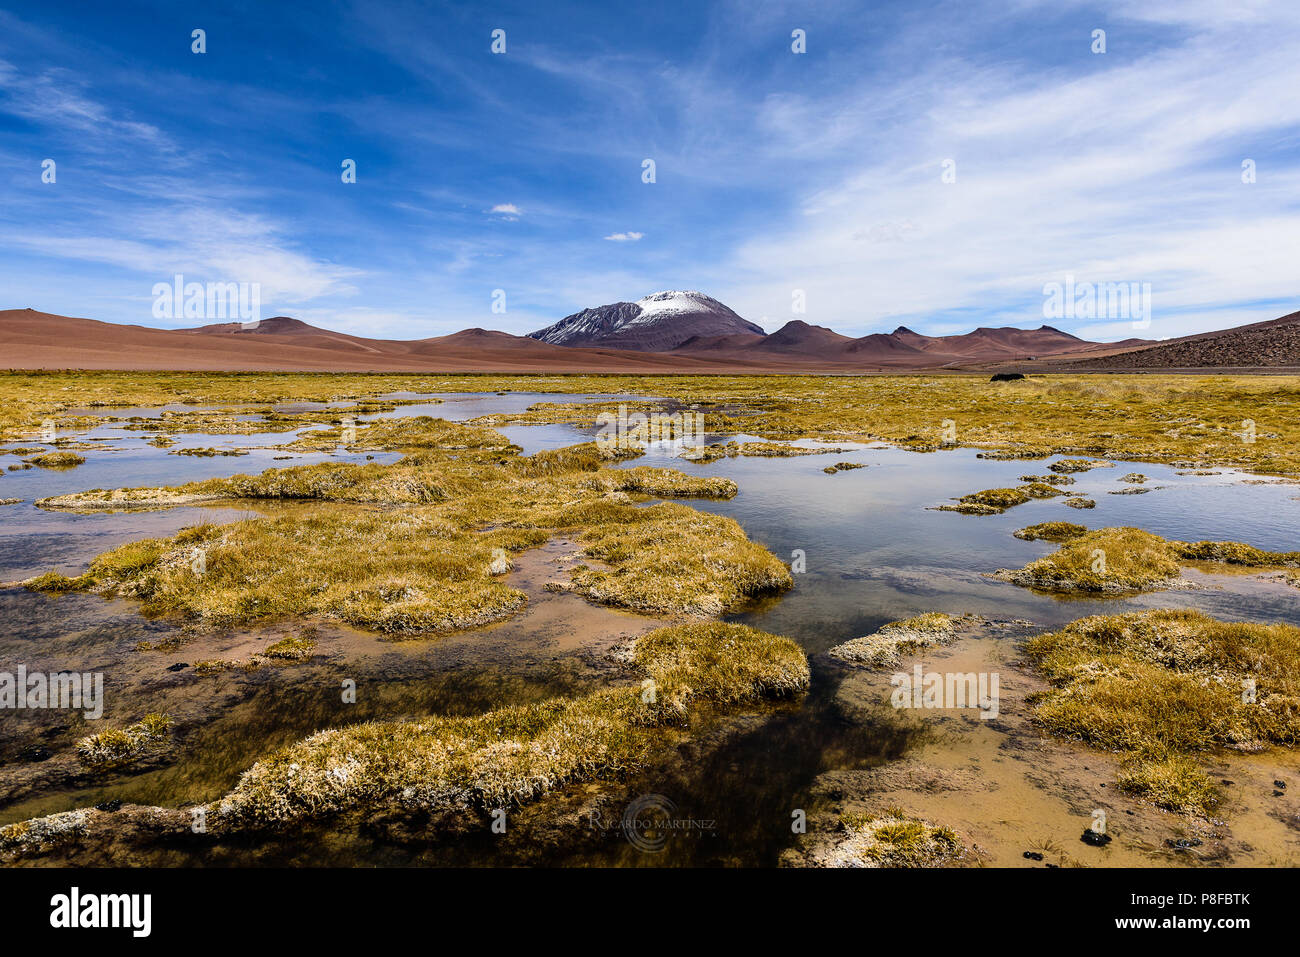 Wetlands in the desert, San Pedro de Atacama, Antofagasta, Chile Stock Photo